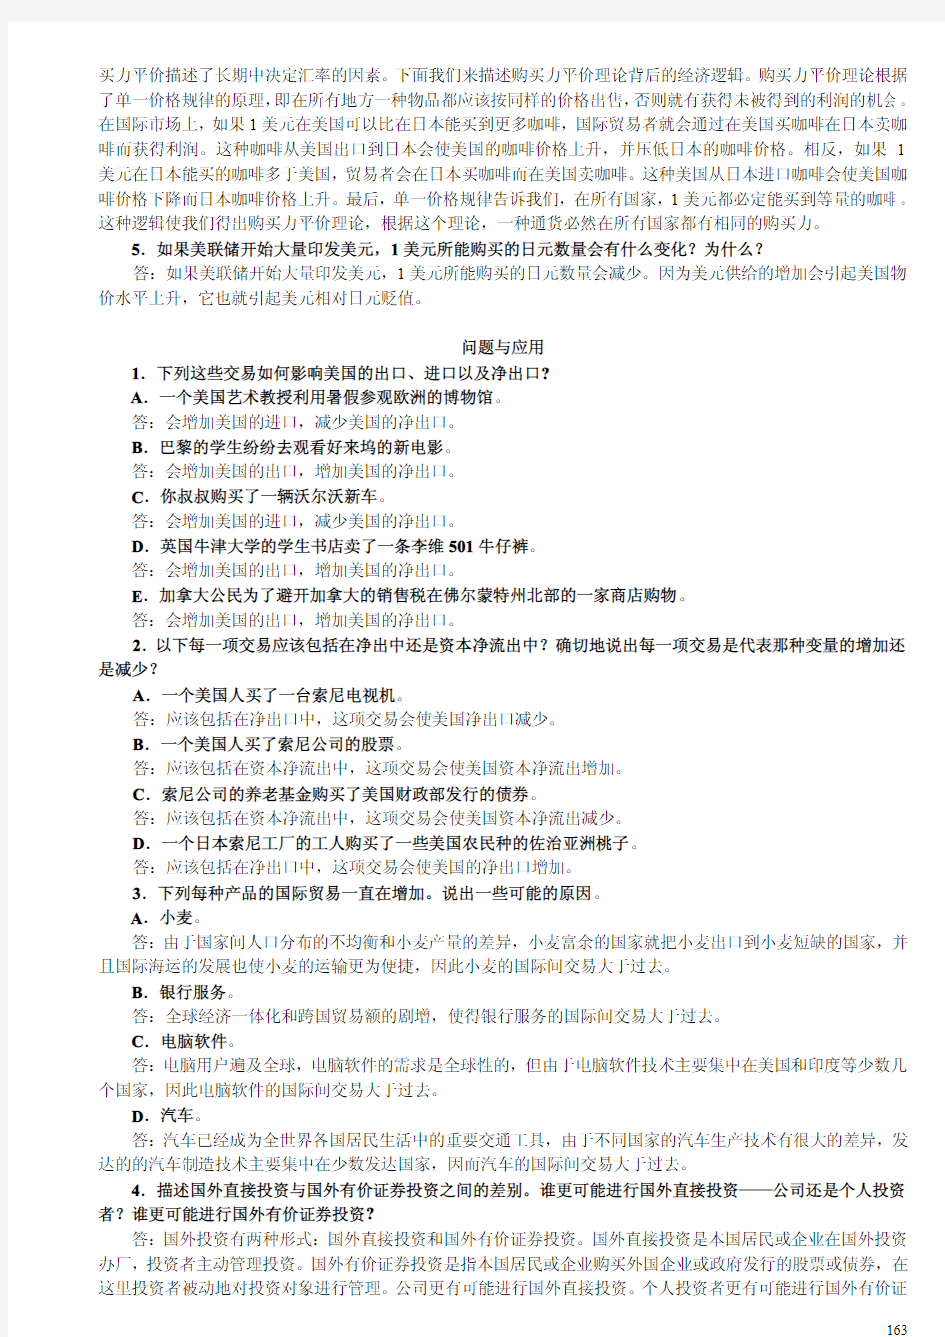 曼昆宏观经济学原理第五版chap31to32课后习题答案(中文)